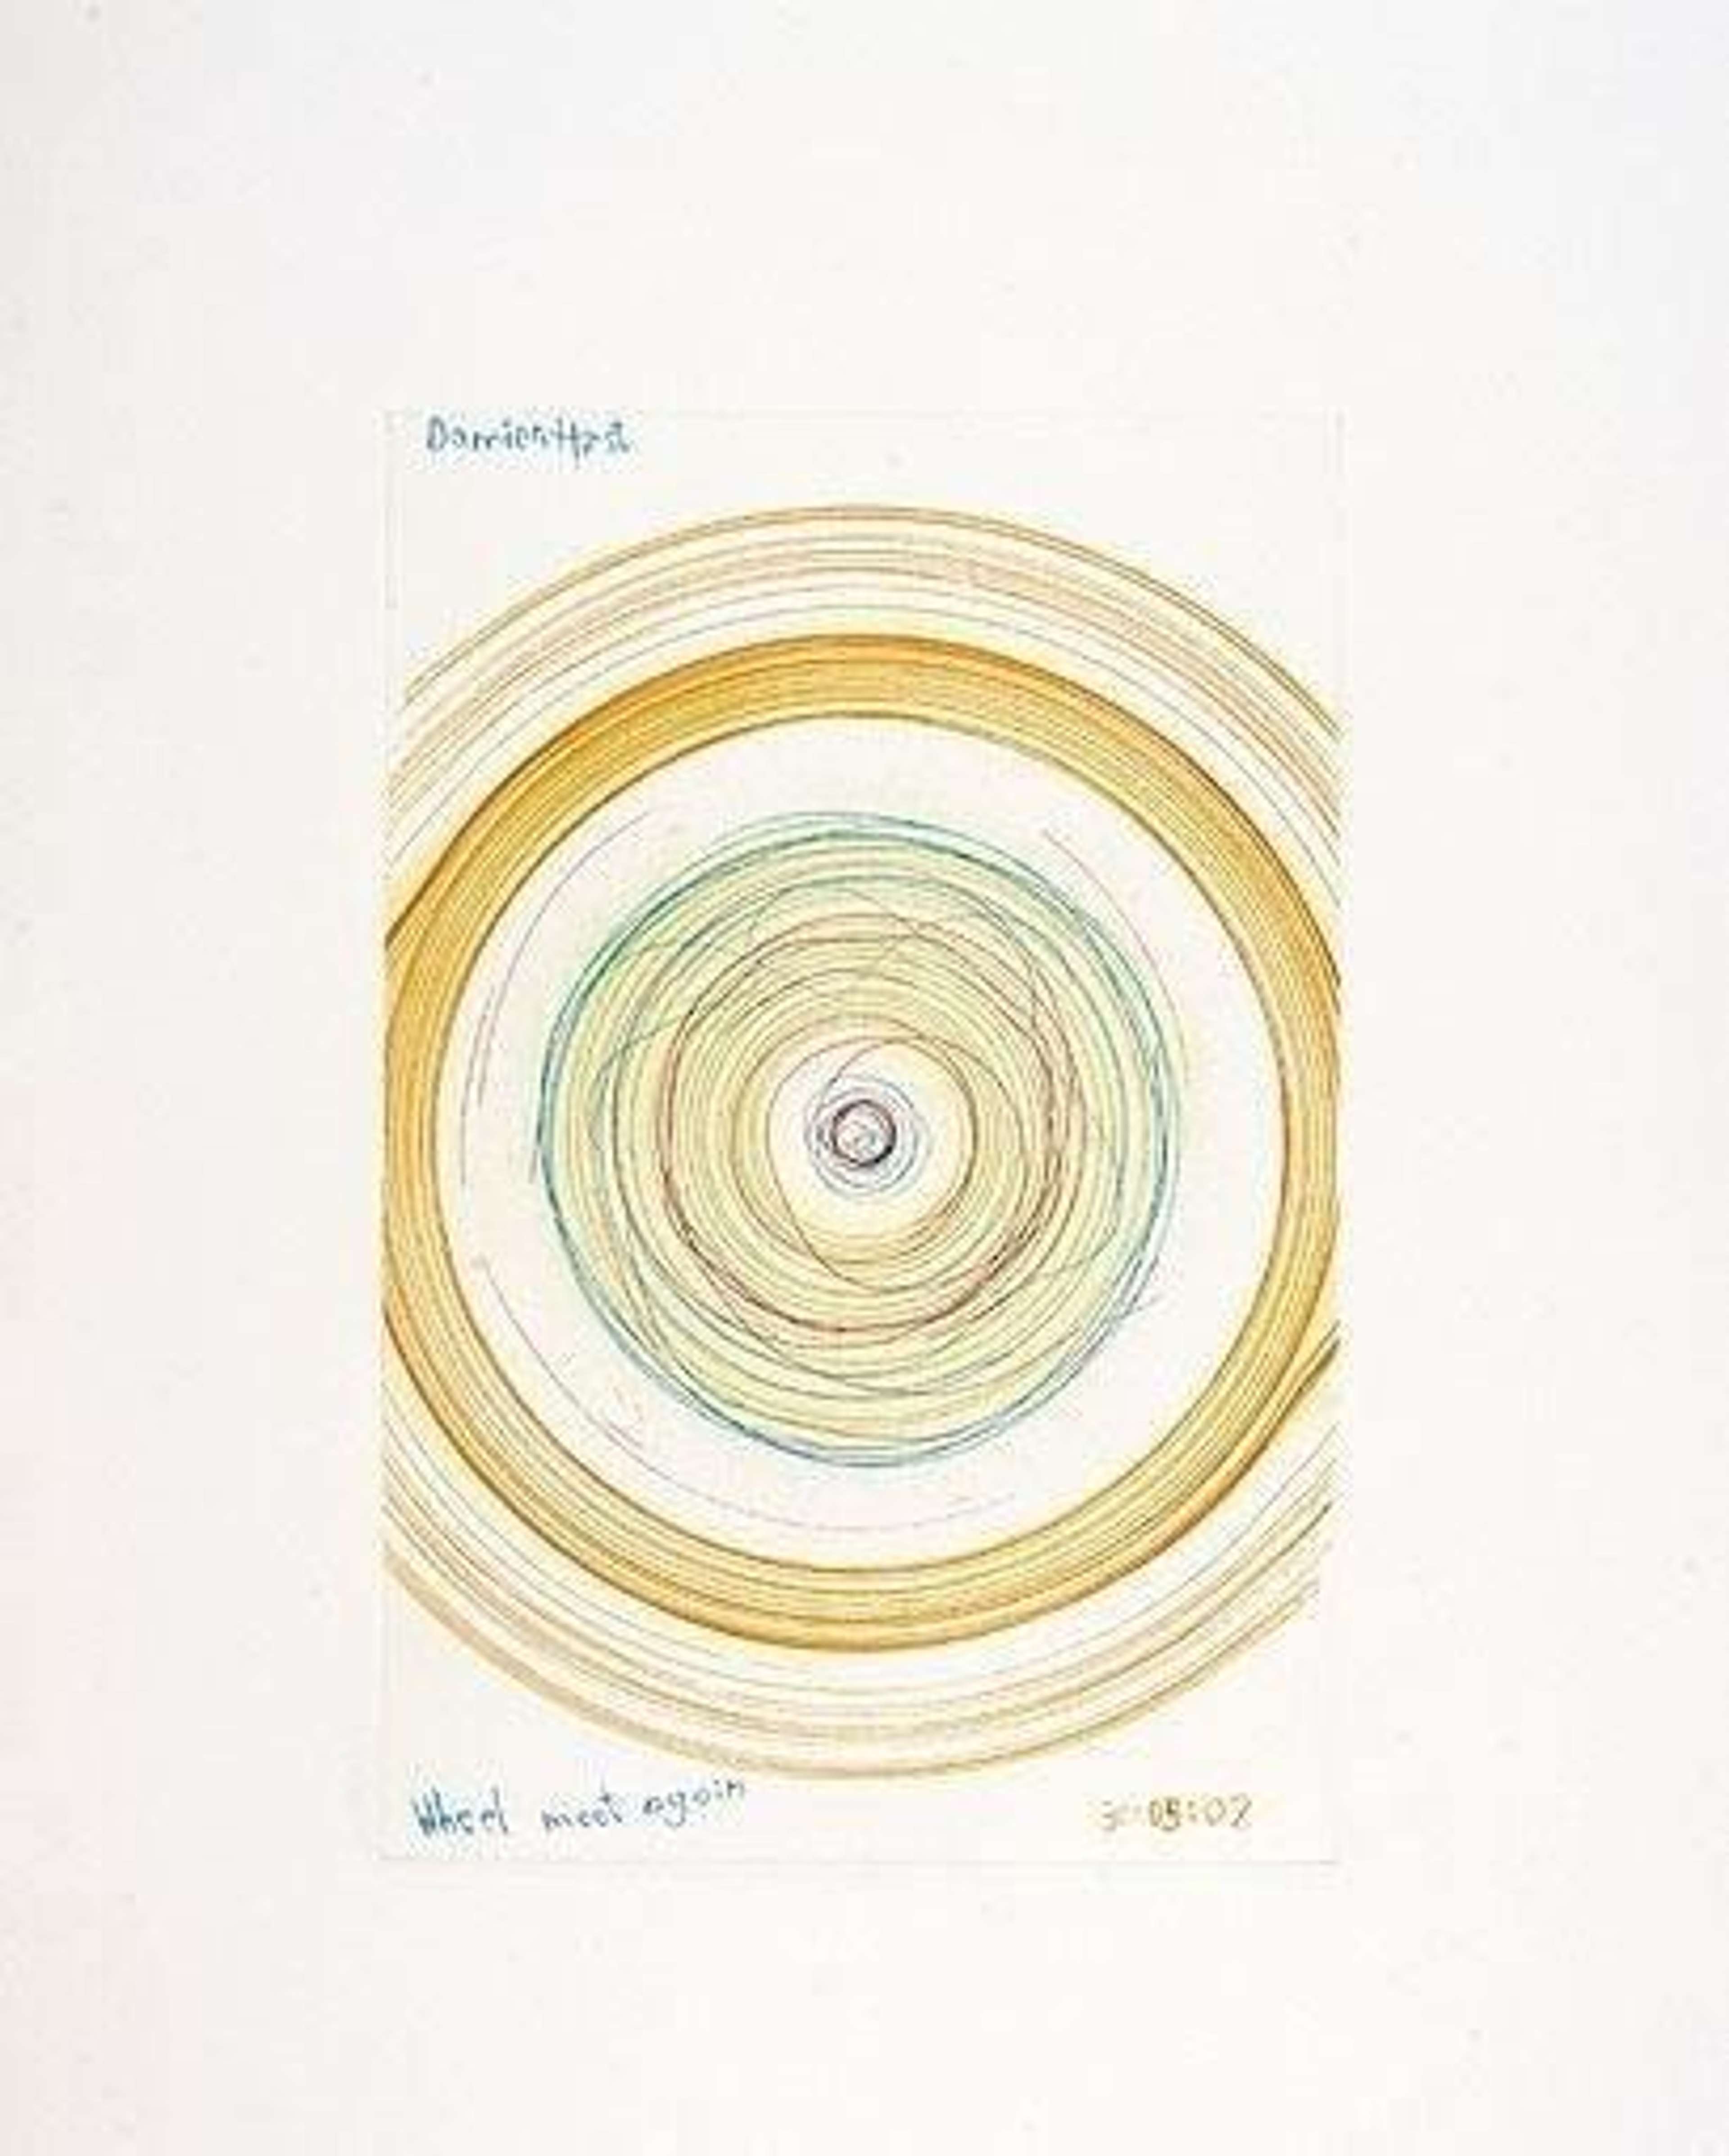 Wheel Meet Again - Signed Print by Damien Hirst 2002 - MyArtBroker